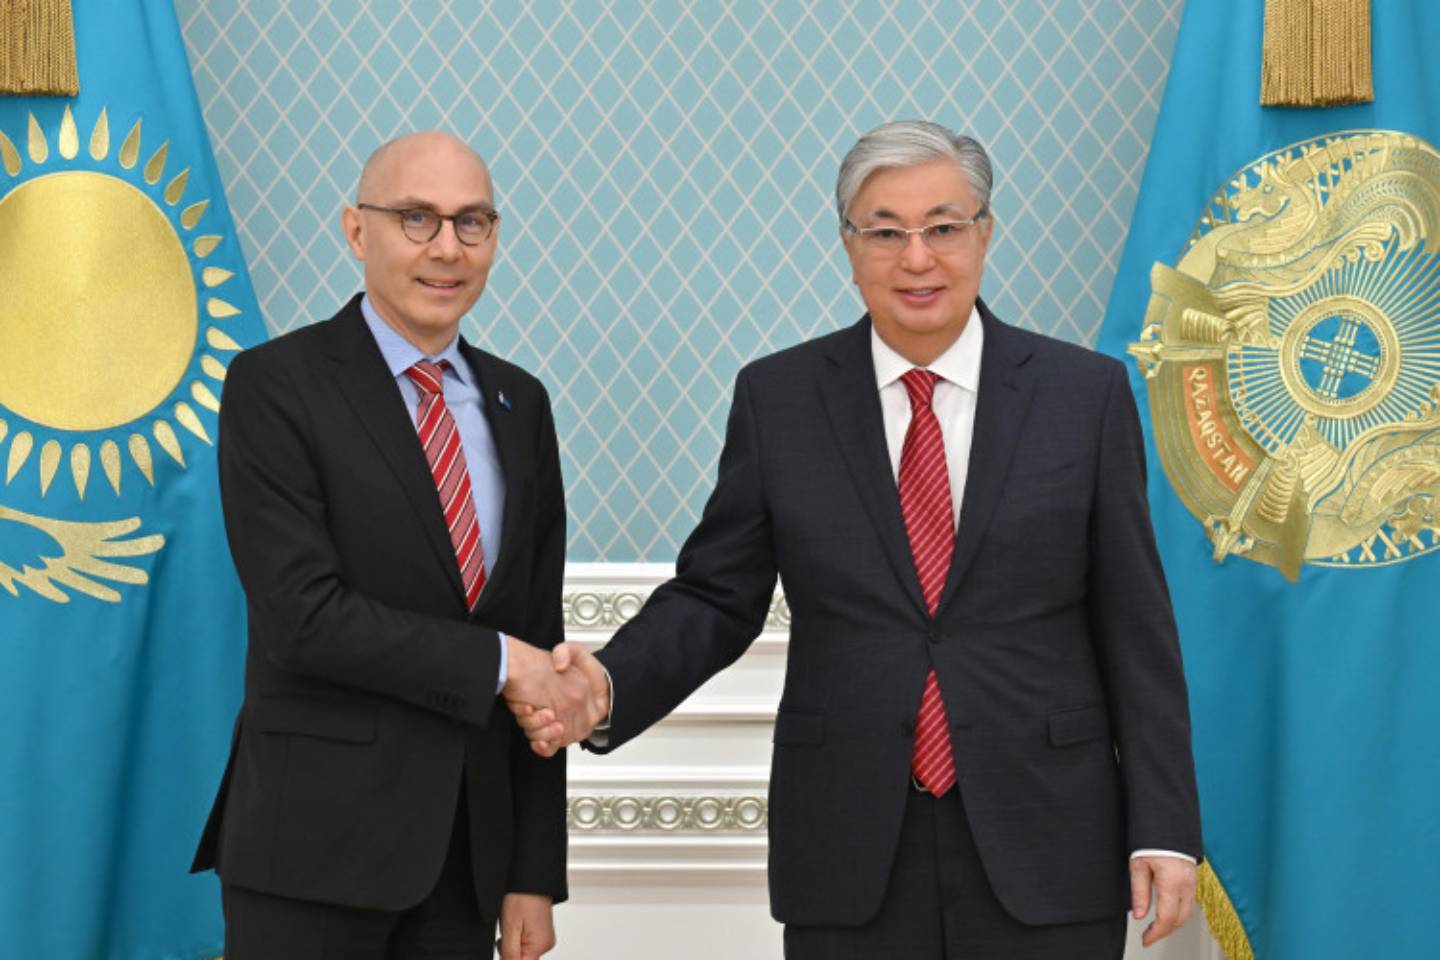 Новости мира / Политика в мире / Защита прав человека: Казахстан намерен укрепить сотрудничество с ООН